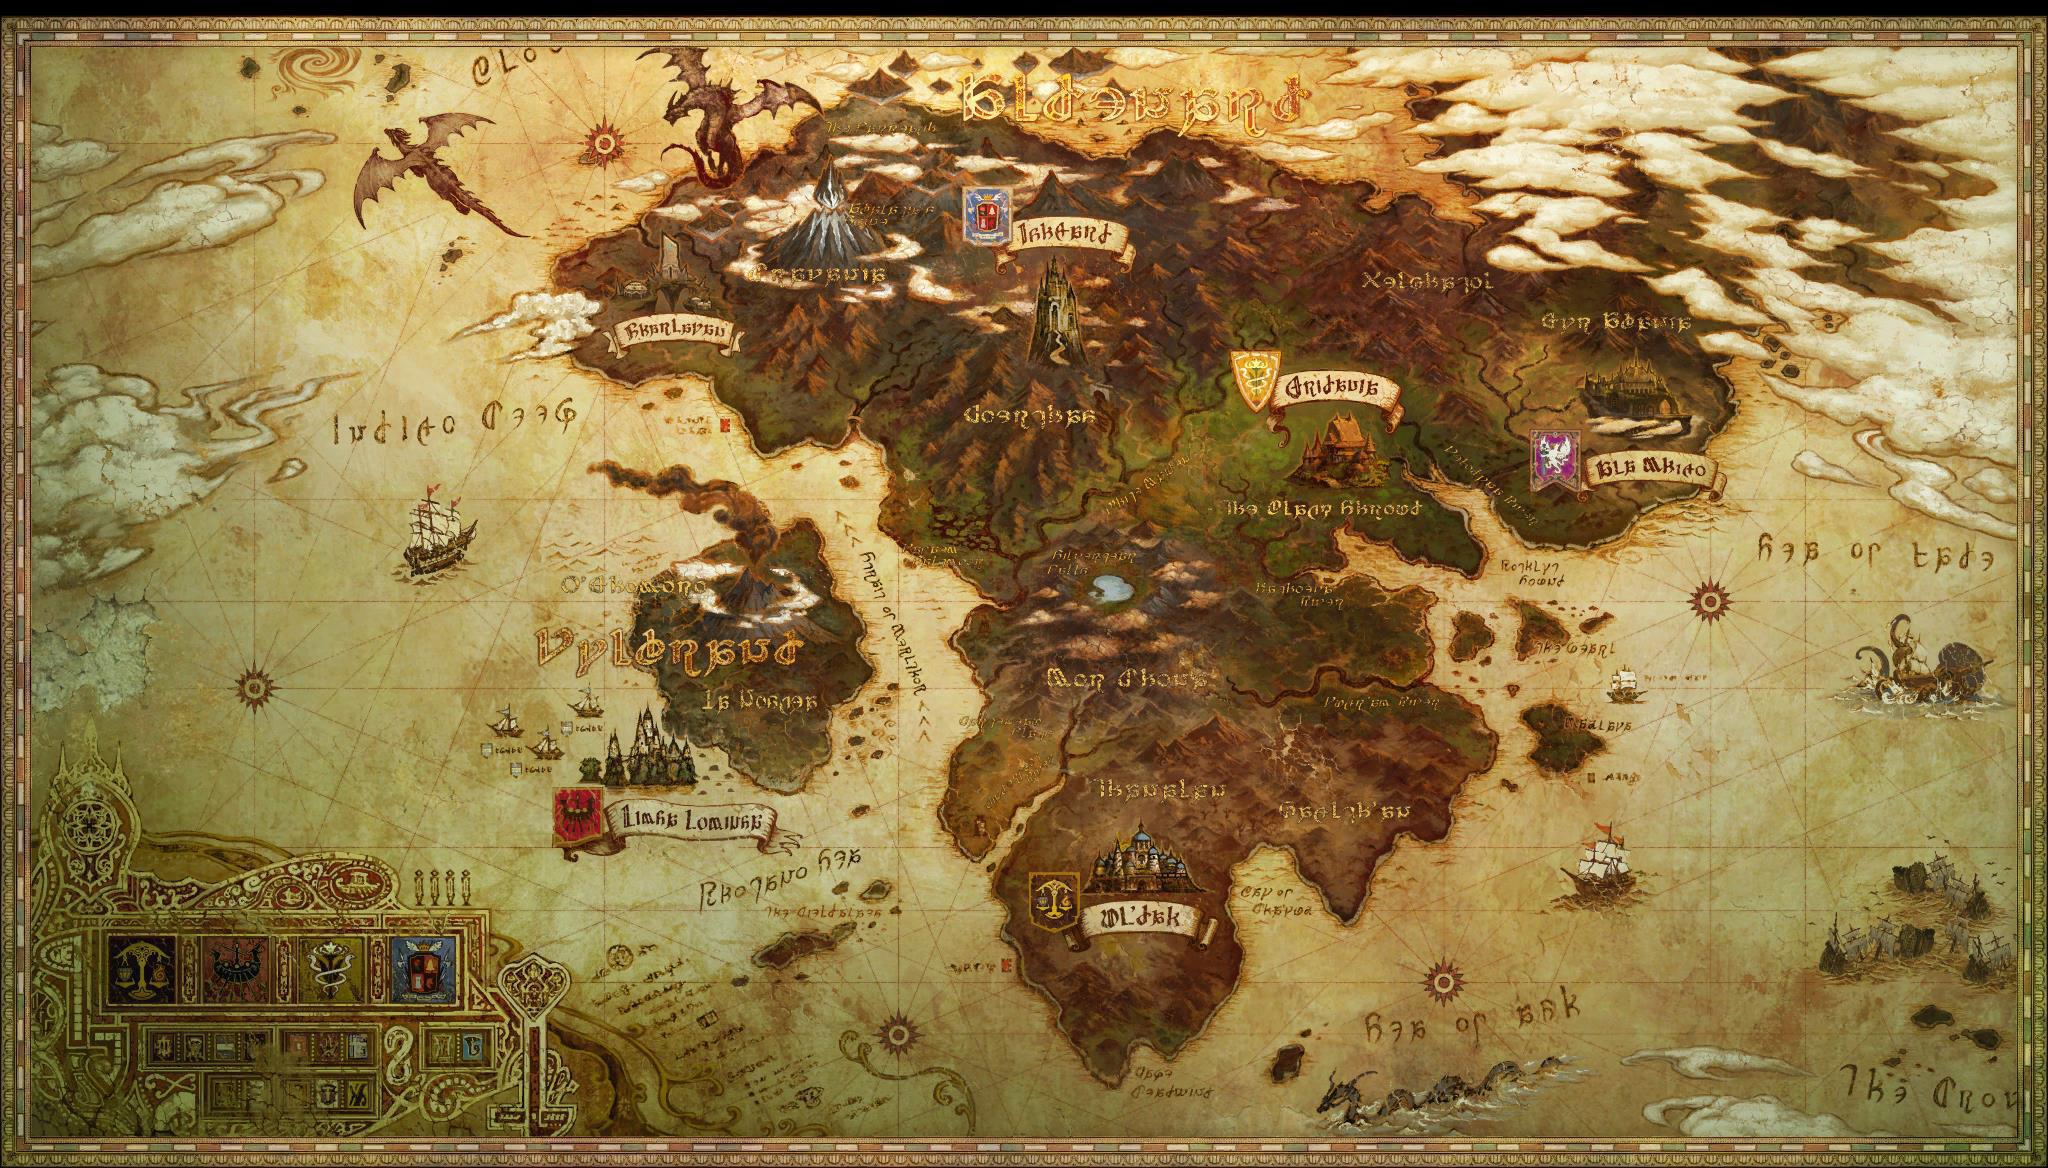 Eorzea World Map